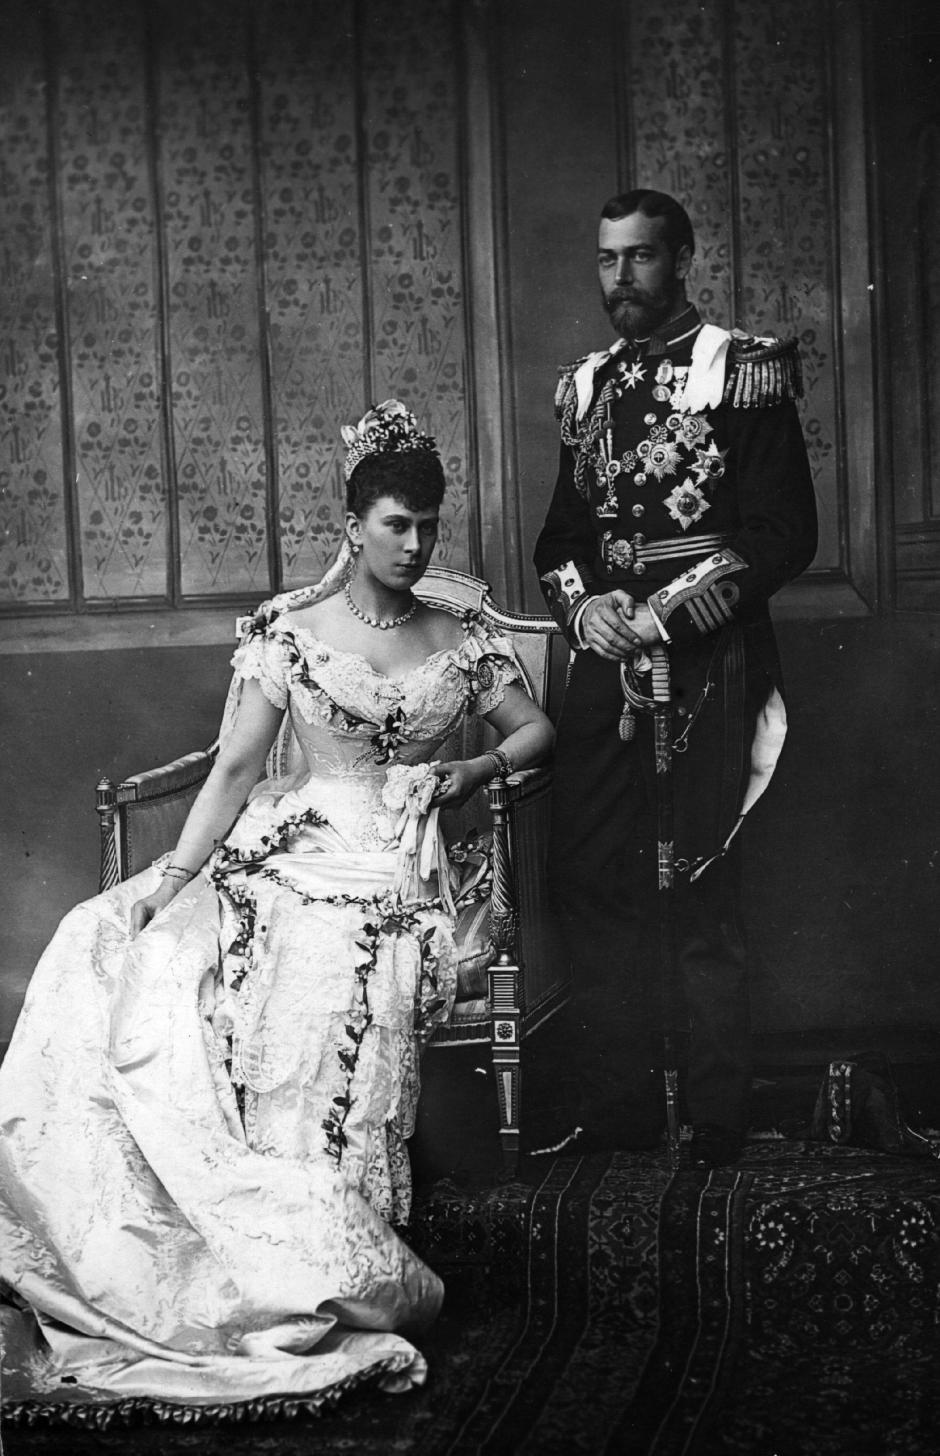 Foto de la boda del Príncipe Jorge, Duque de York, y la Princesa Mary de Teck, 6 de julio de 1893